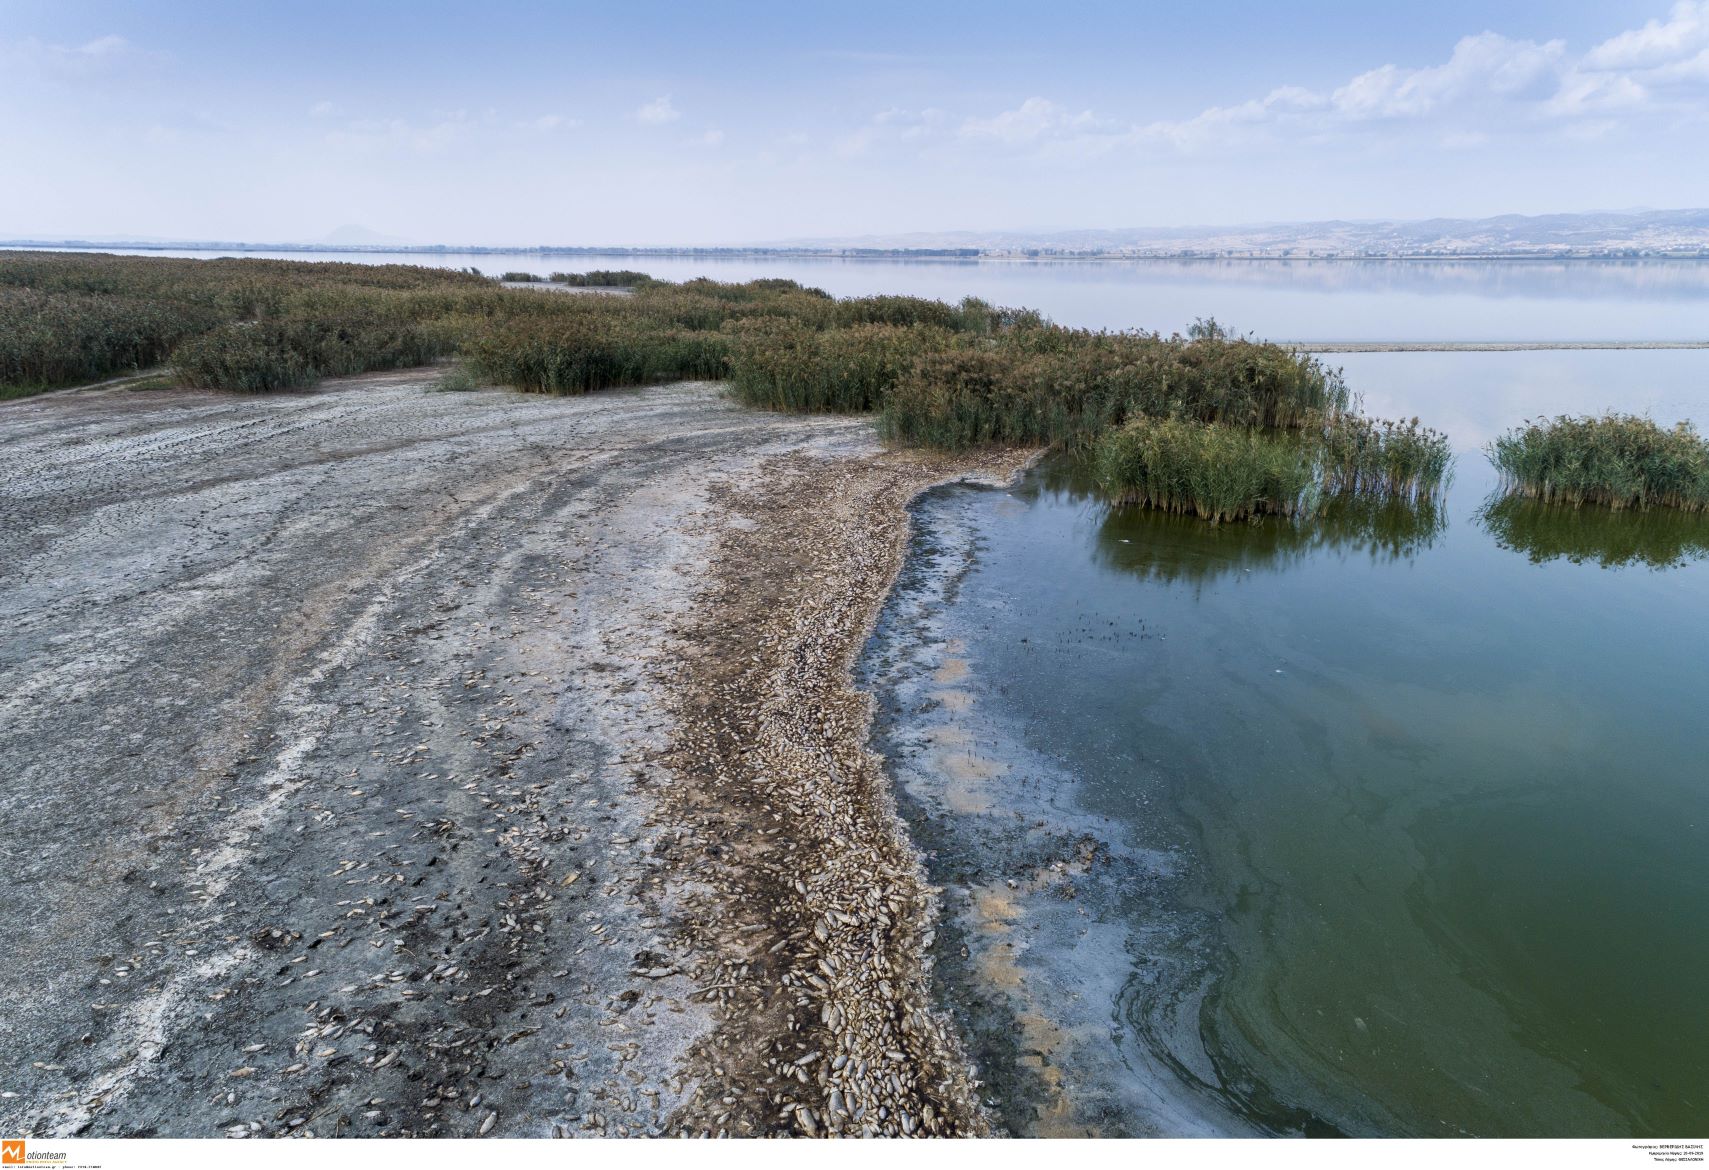 Λίμνη Κορώνεια: Σε κακή οικολογική κατάσταση